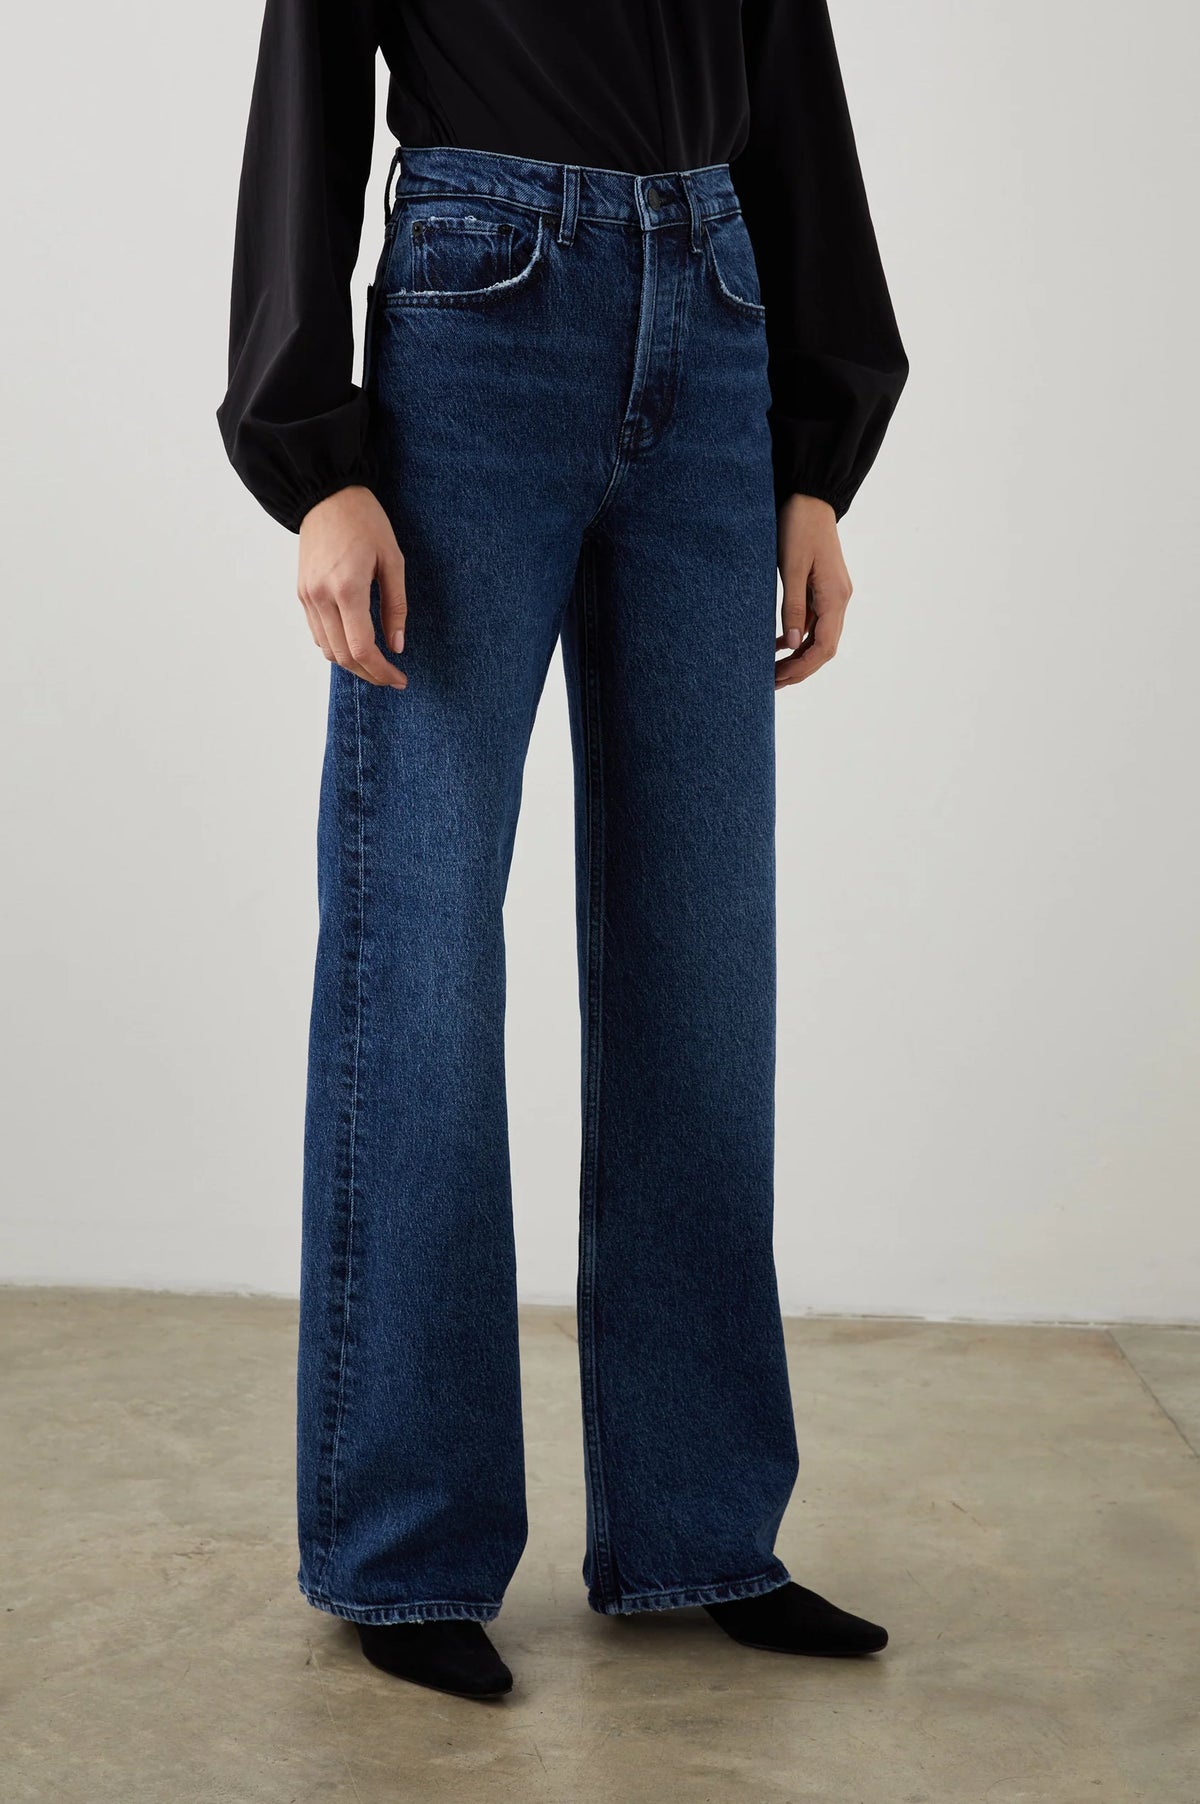 Wide leg blue jeans with a high waist